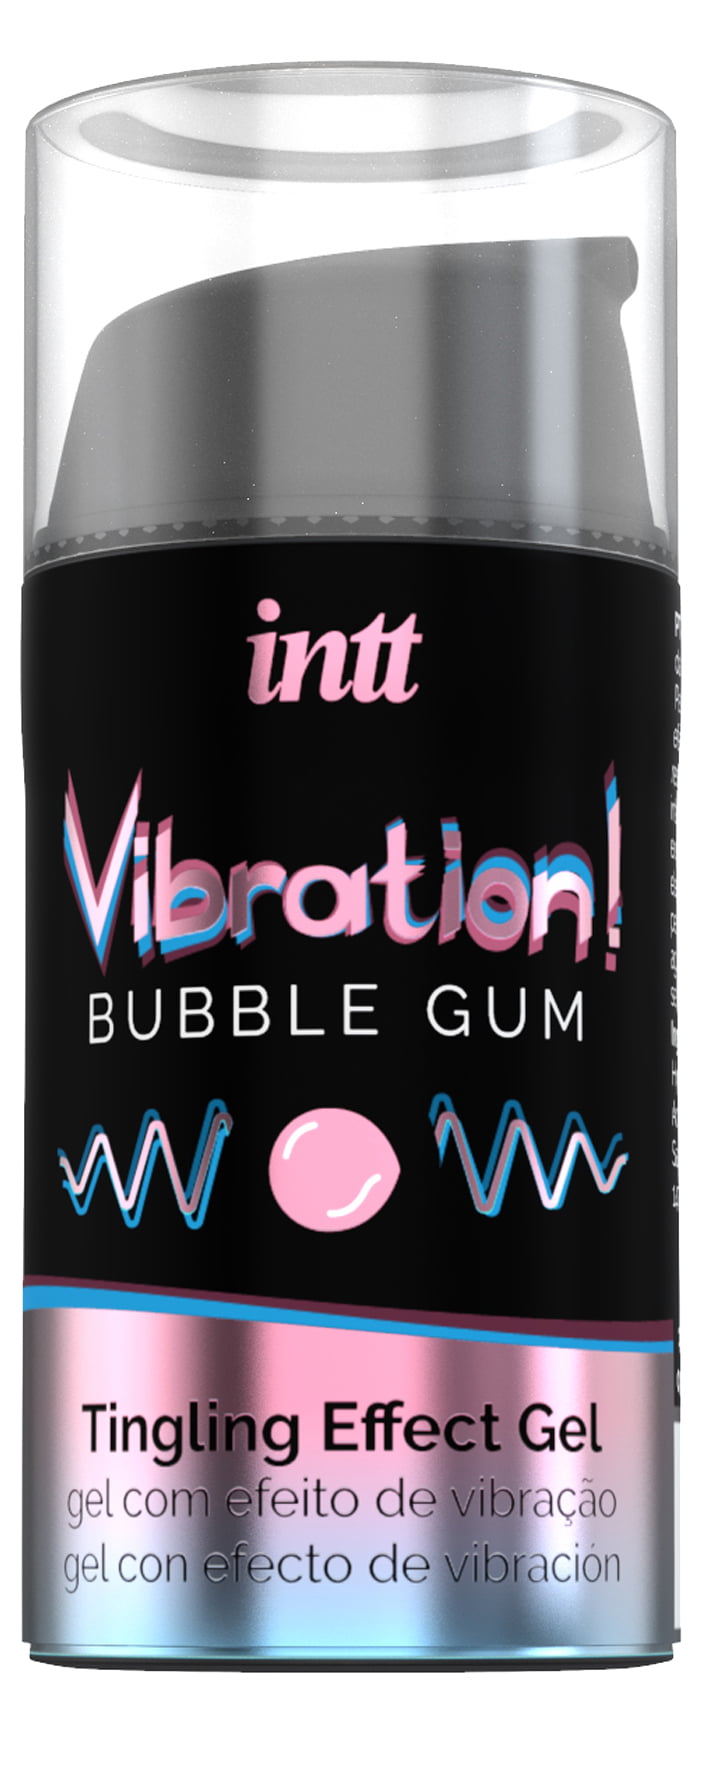 De meest complete vloeibare vibrator is nu verkrijgbaar. Het brengt golven van verwarmende, pulserende en vibrerende sensaties gedurende meer dan 30 minuten. Het product is unisex en kan worden gebruikt voor penetratie, masturbatie, zoenen en ook orale seks vanwege de heerlijke Bubble Gum-smaak.